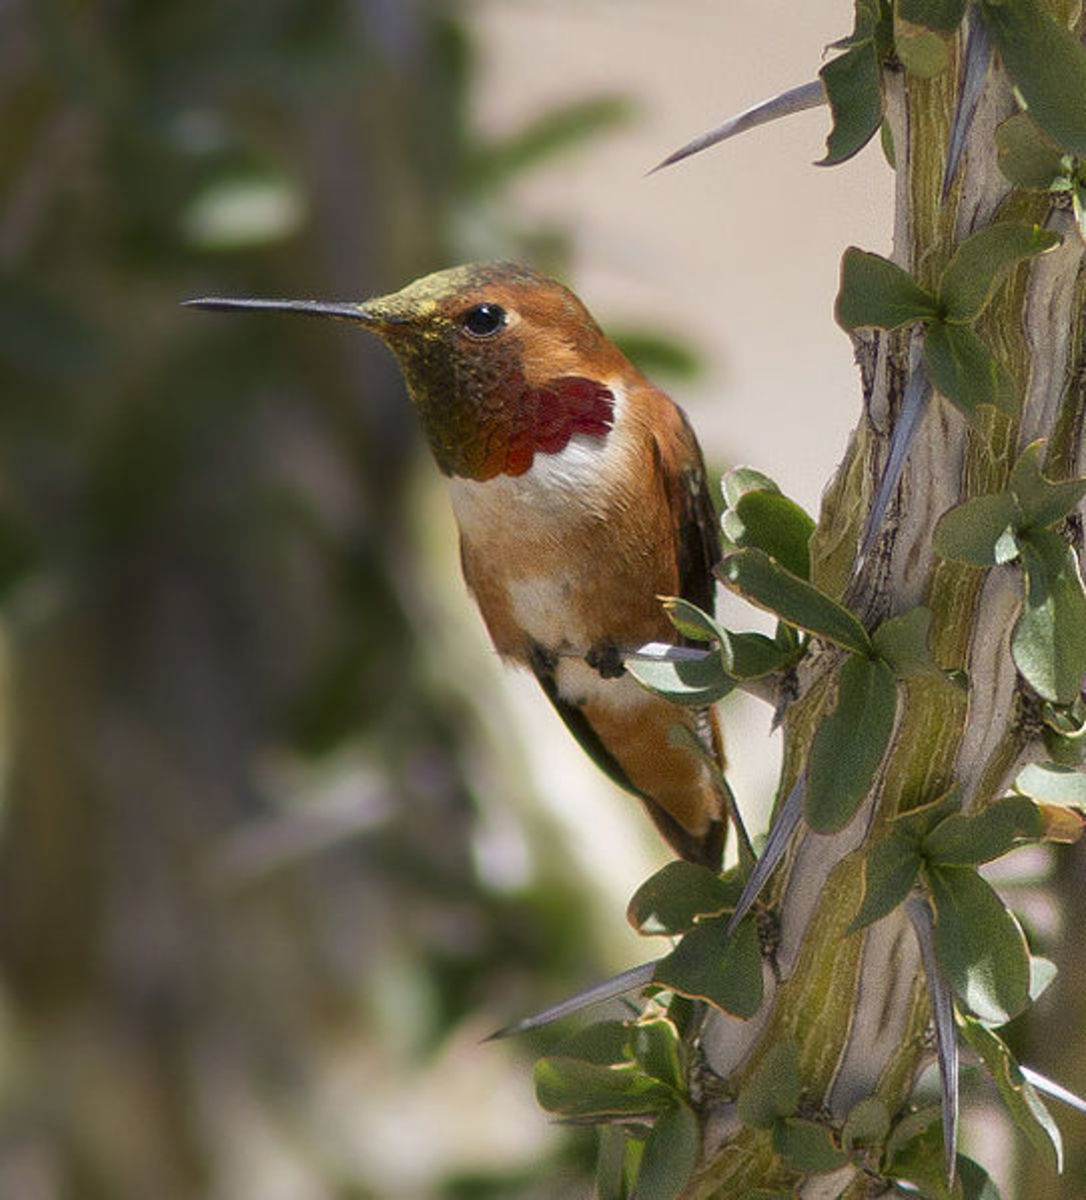 Different species of humming birds : Allen's hummingbird  